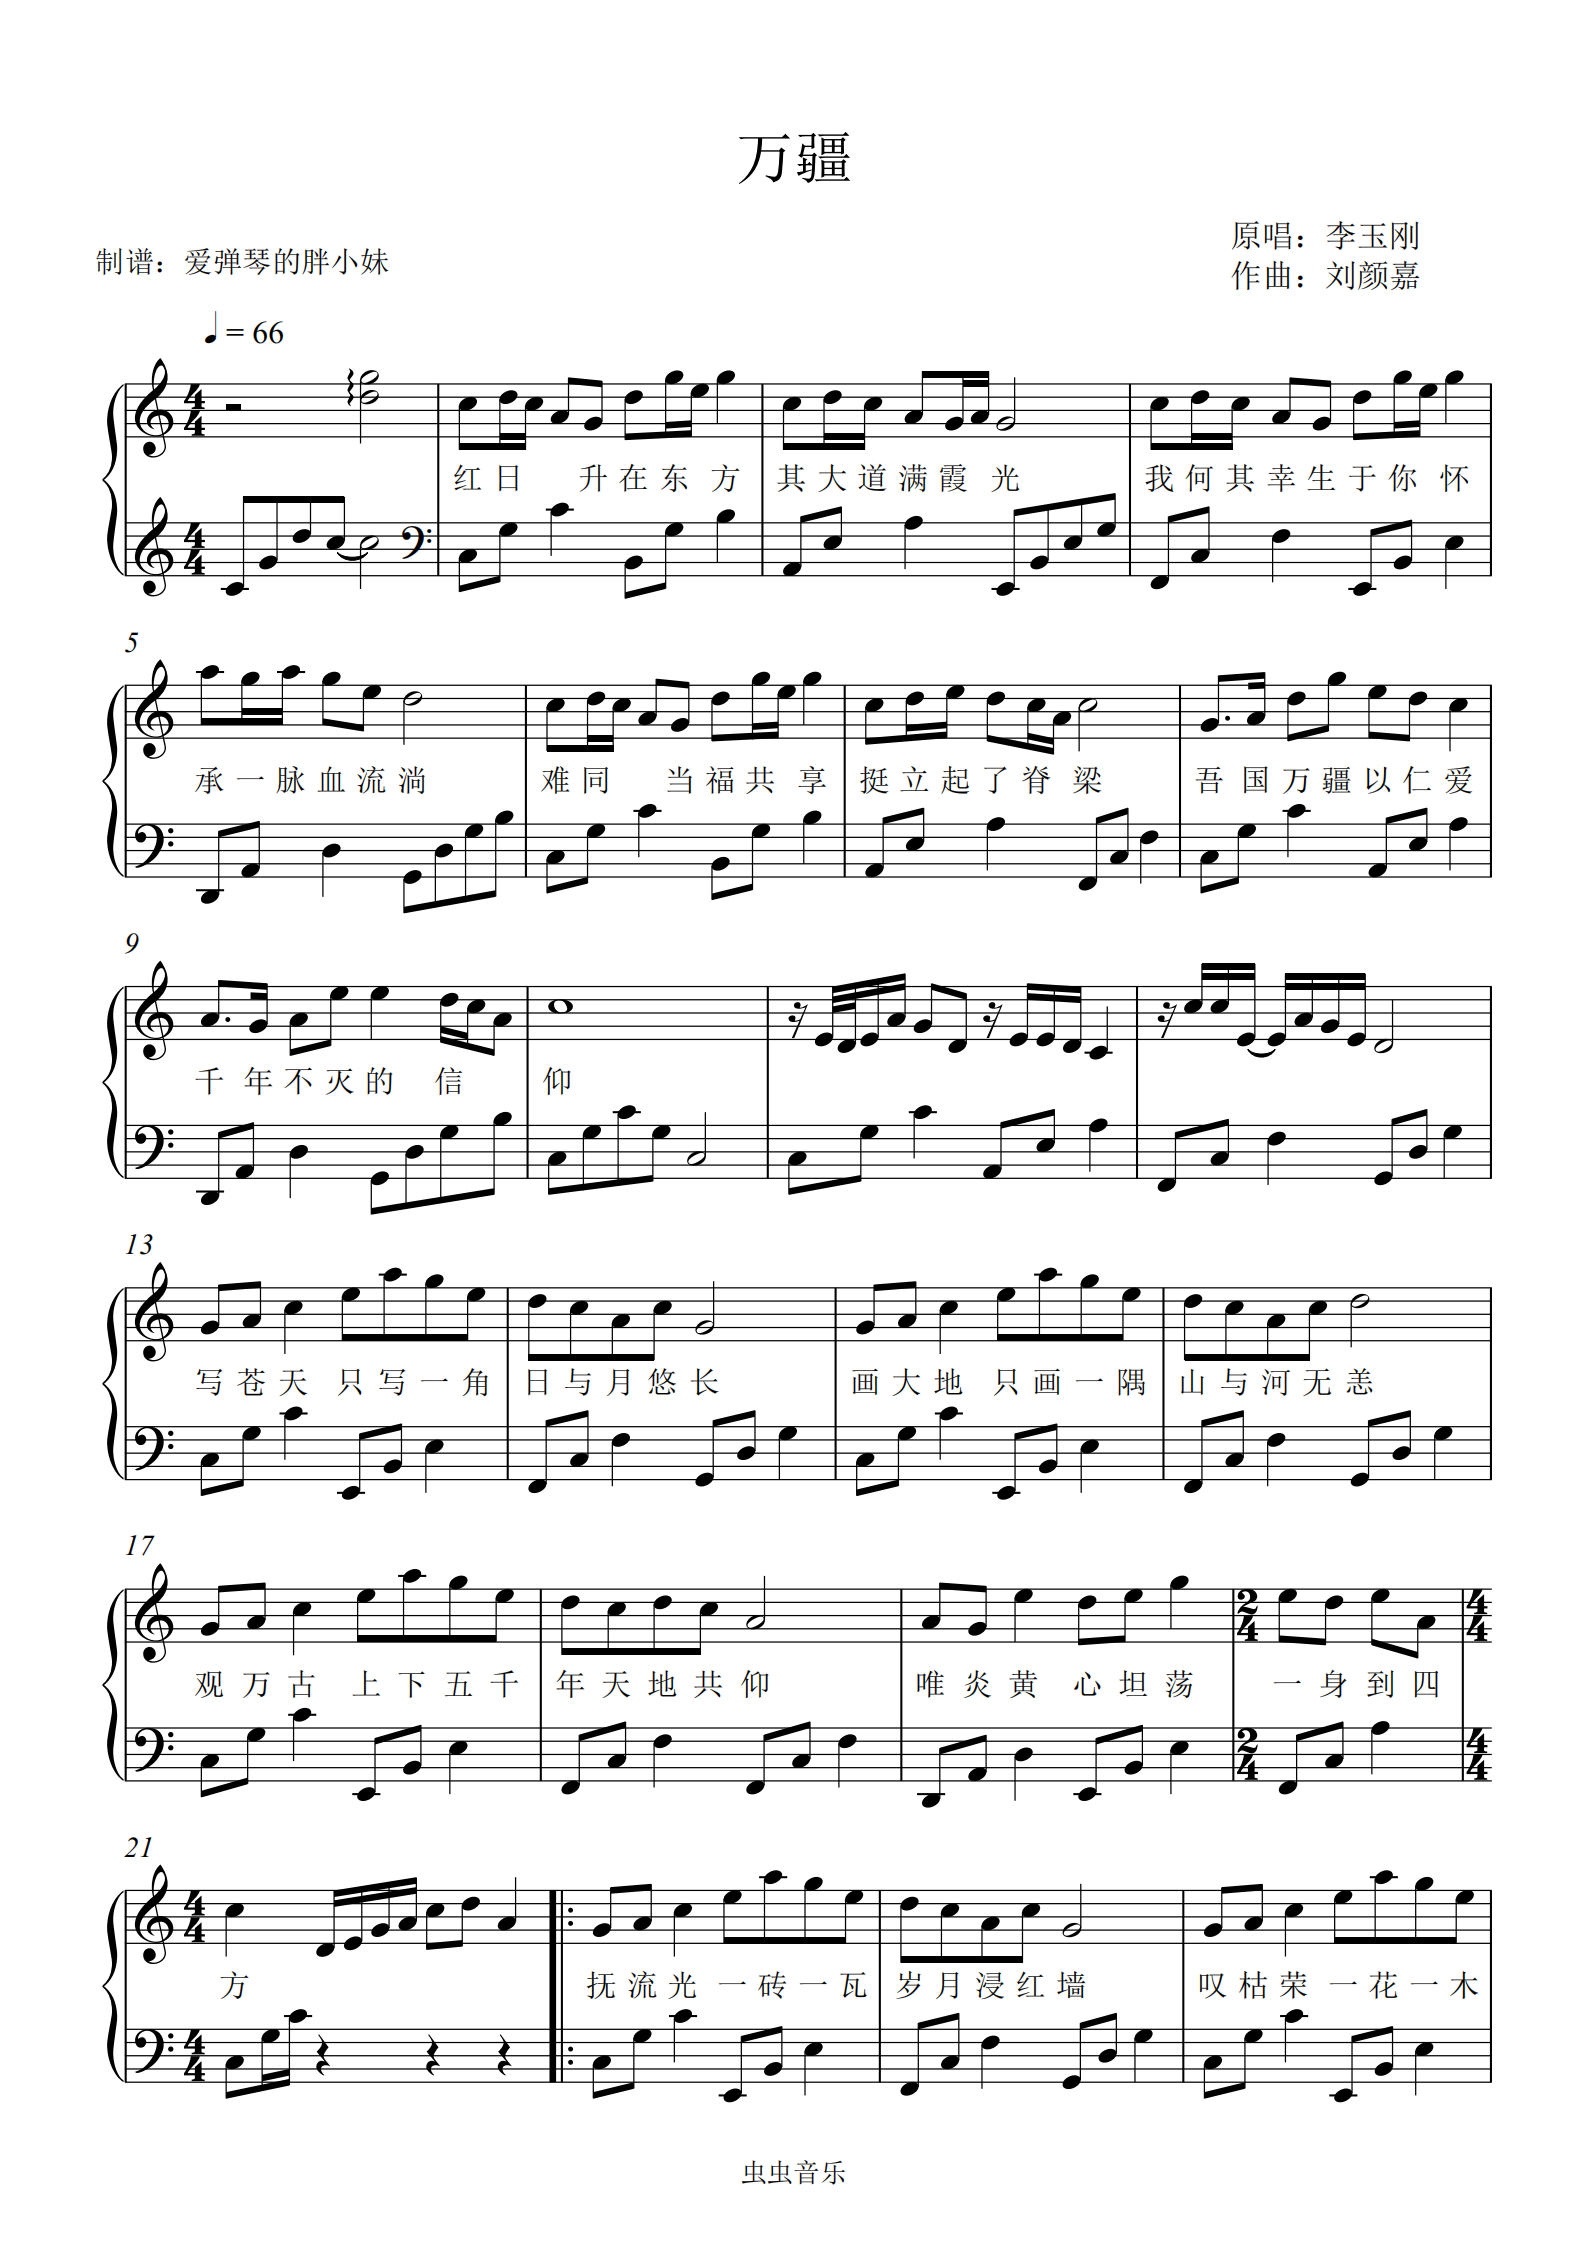 《万疆》-c调初学者简单完整版-李玉刚(配歌词)钢琴谱,《万疆》-c调